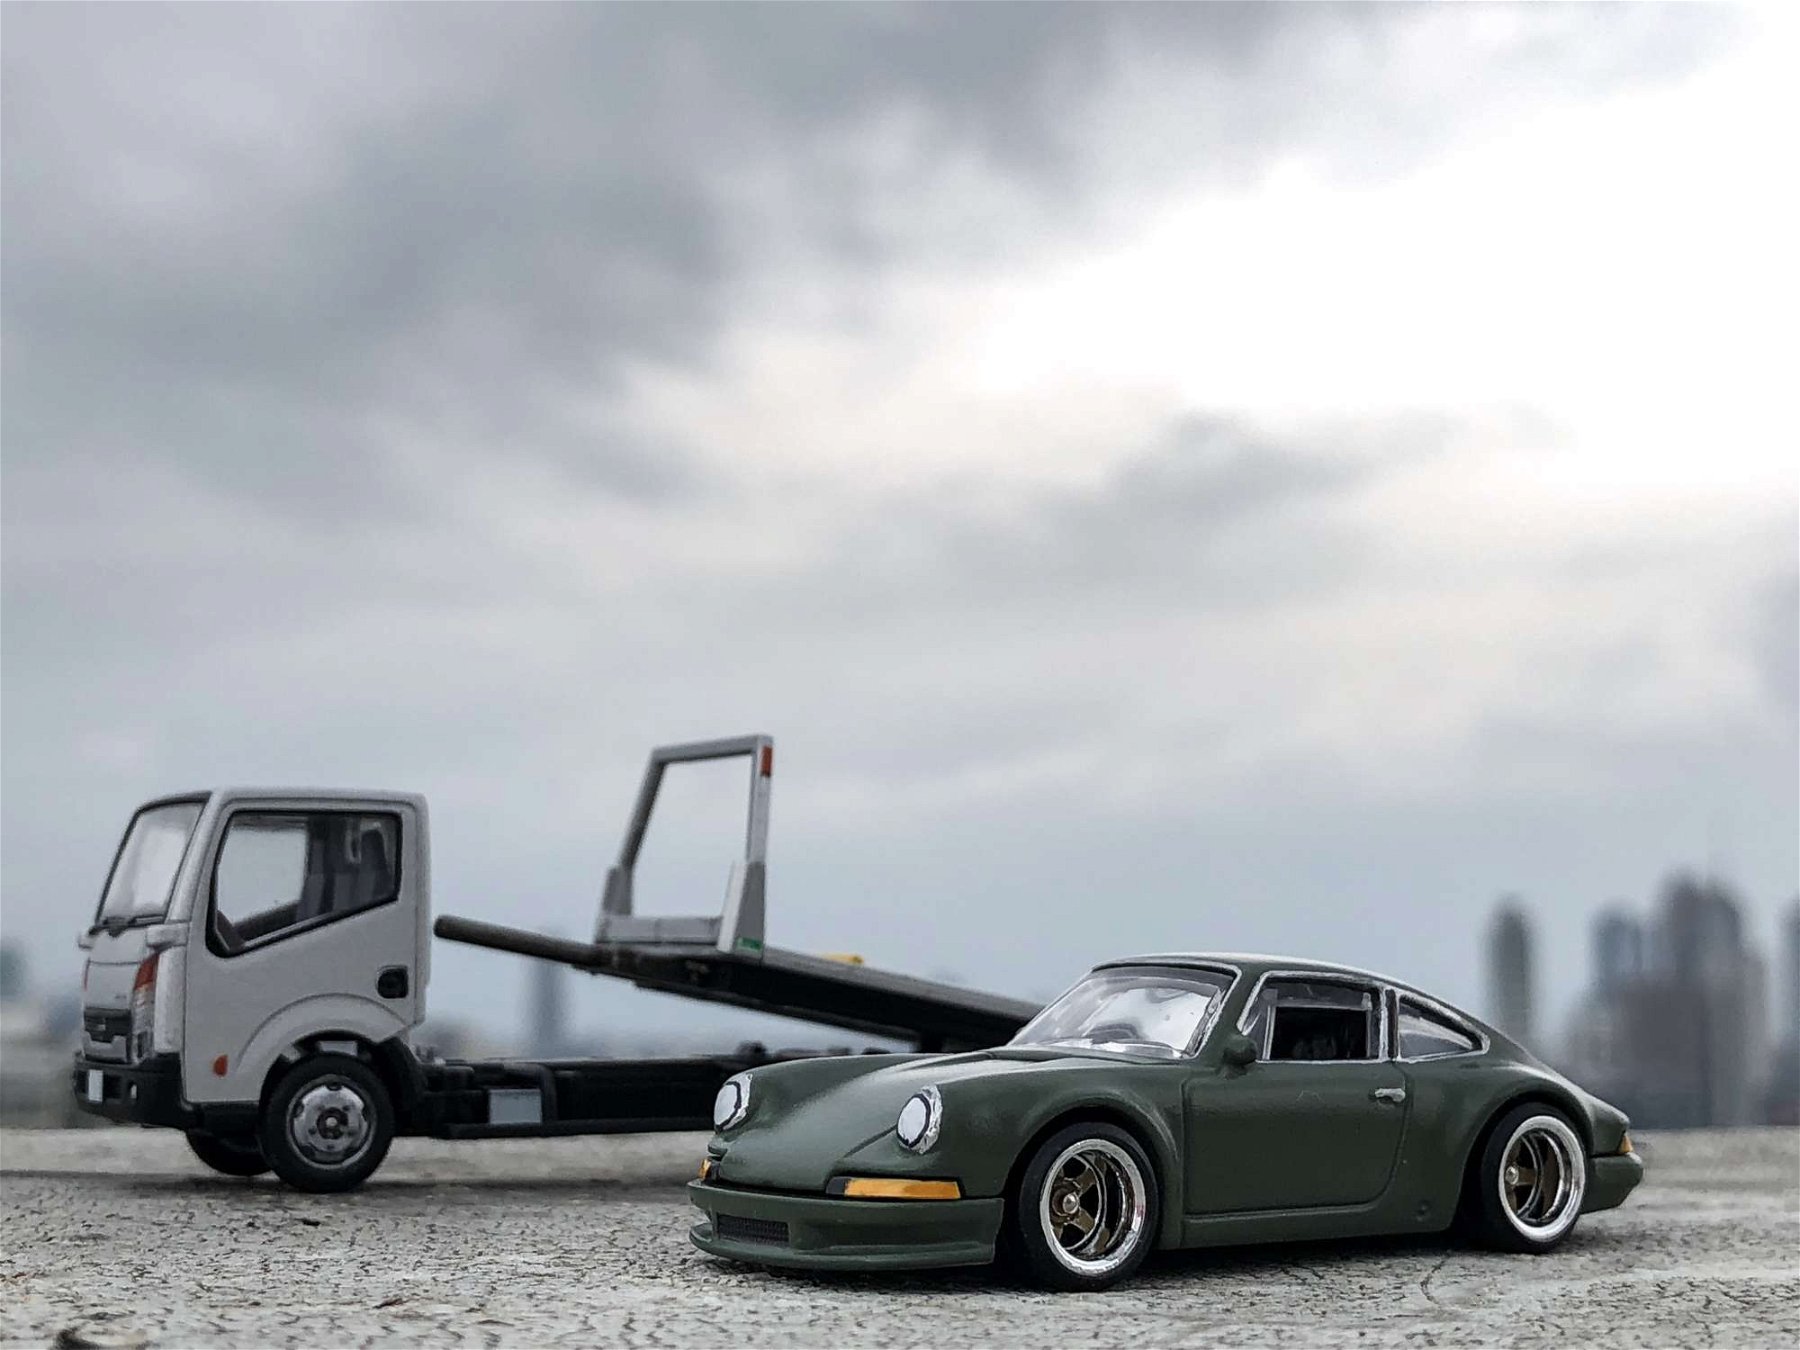 Porsche Garage